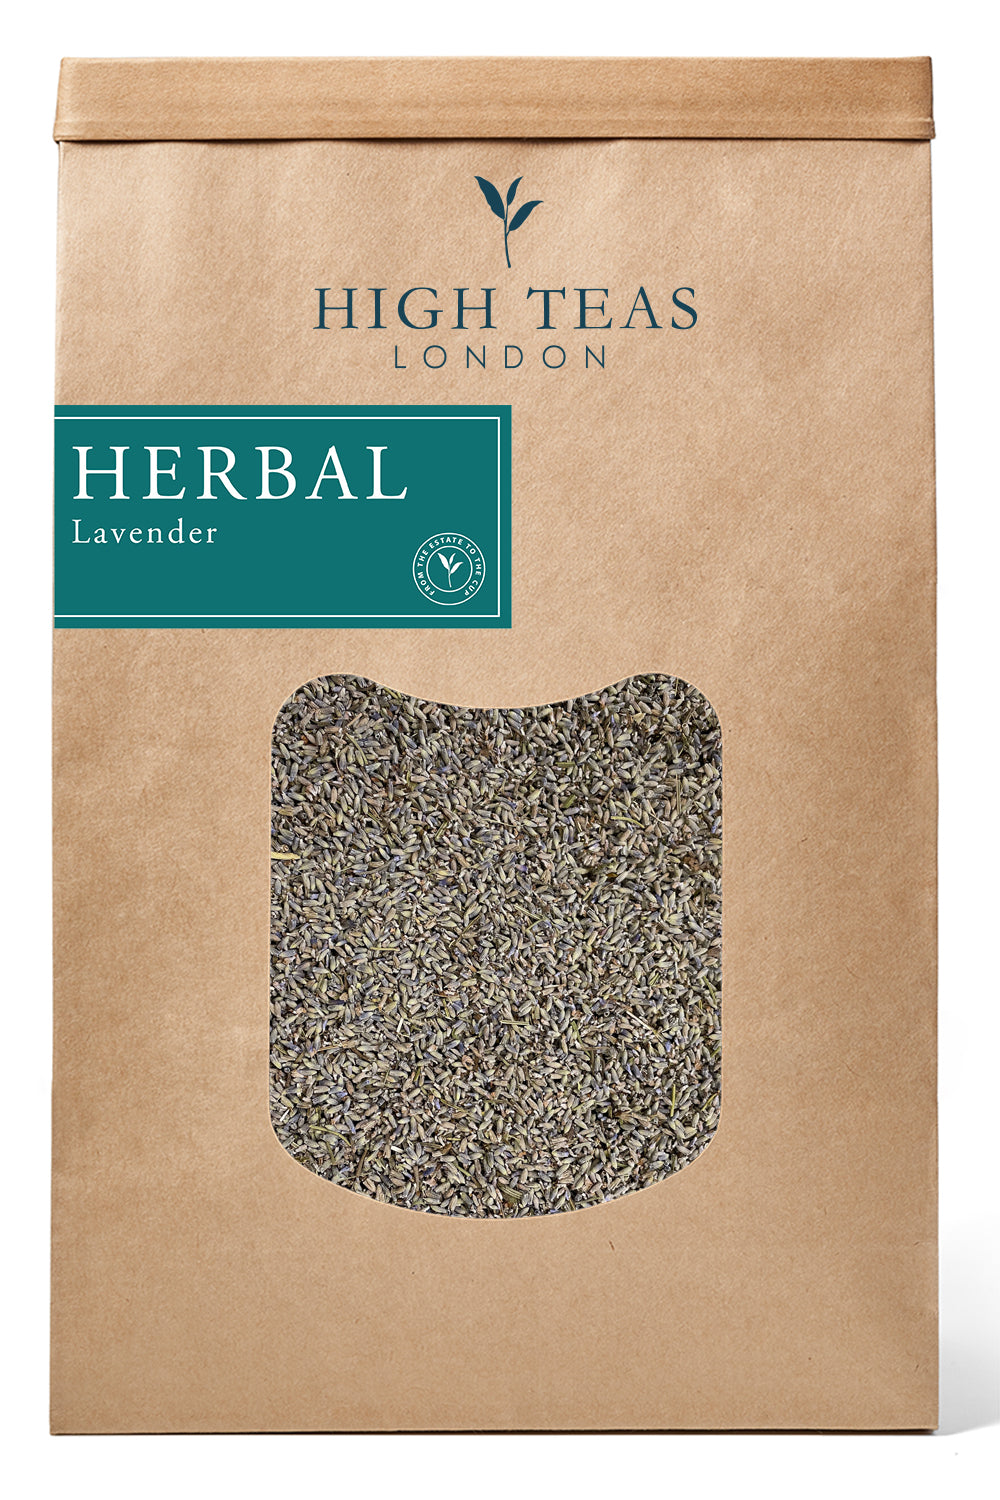 Lavender Flower Tea-500g-Loose Leaf Tea-High Teas